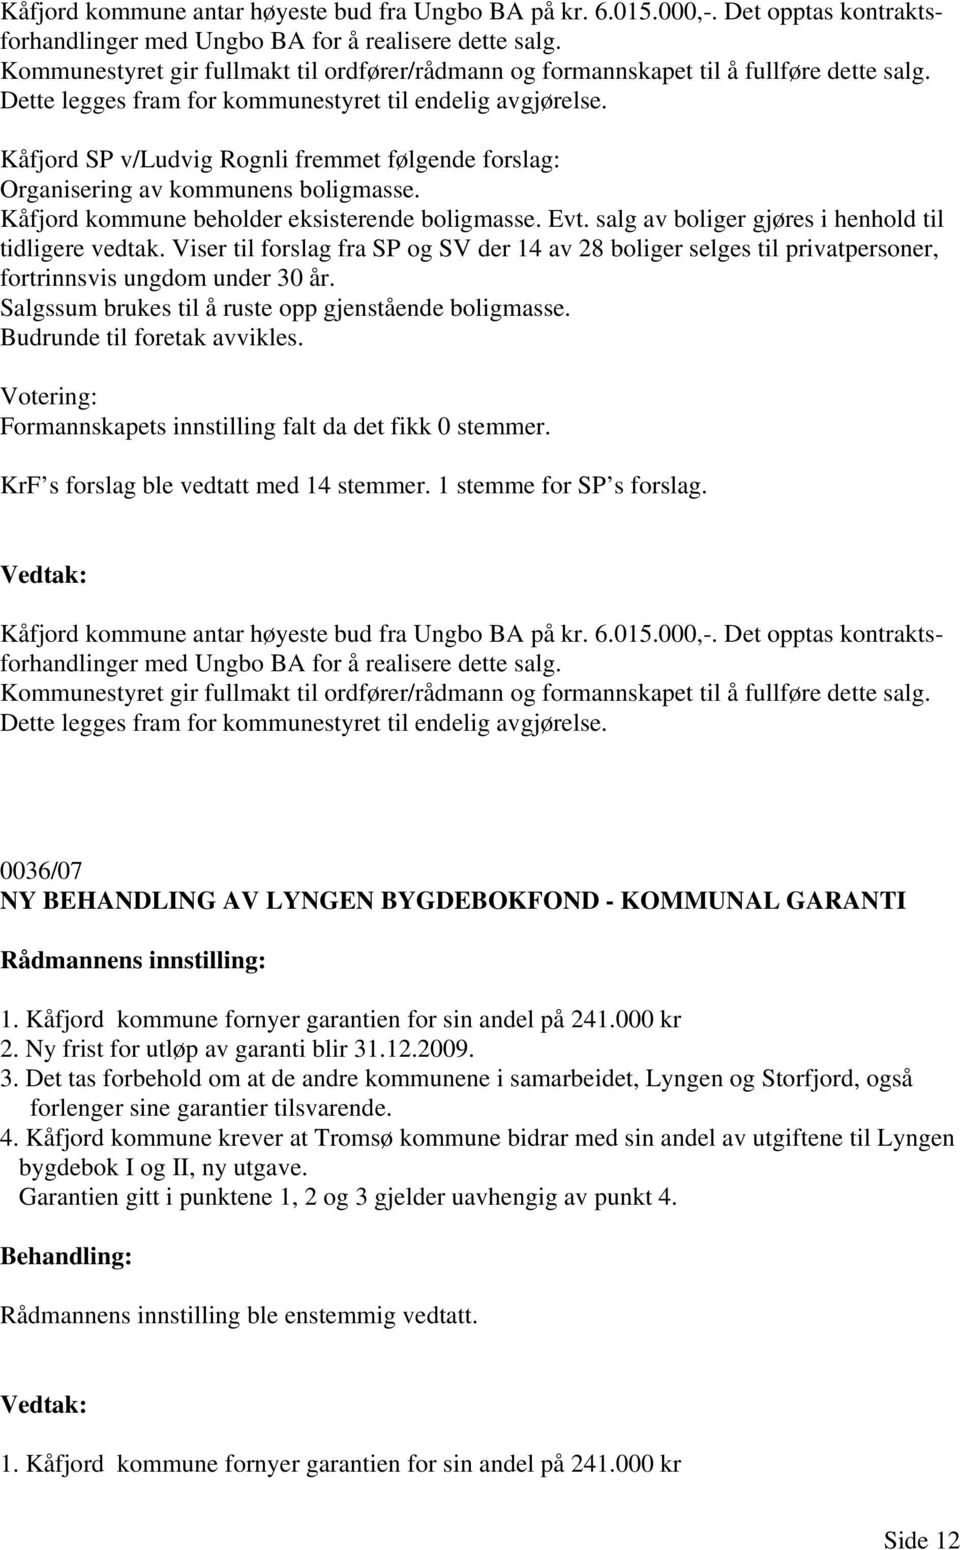 Kåfjord SP v/ludvig Rognli fremmet følgende forslag: Organisering av kommunens boligmasse. Kåfjord kommune beholder eksisterende boligmasse. Evt. salg av boliger gjøres i henhold til tidligere vedtak.